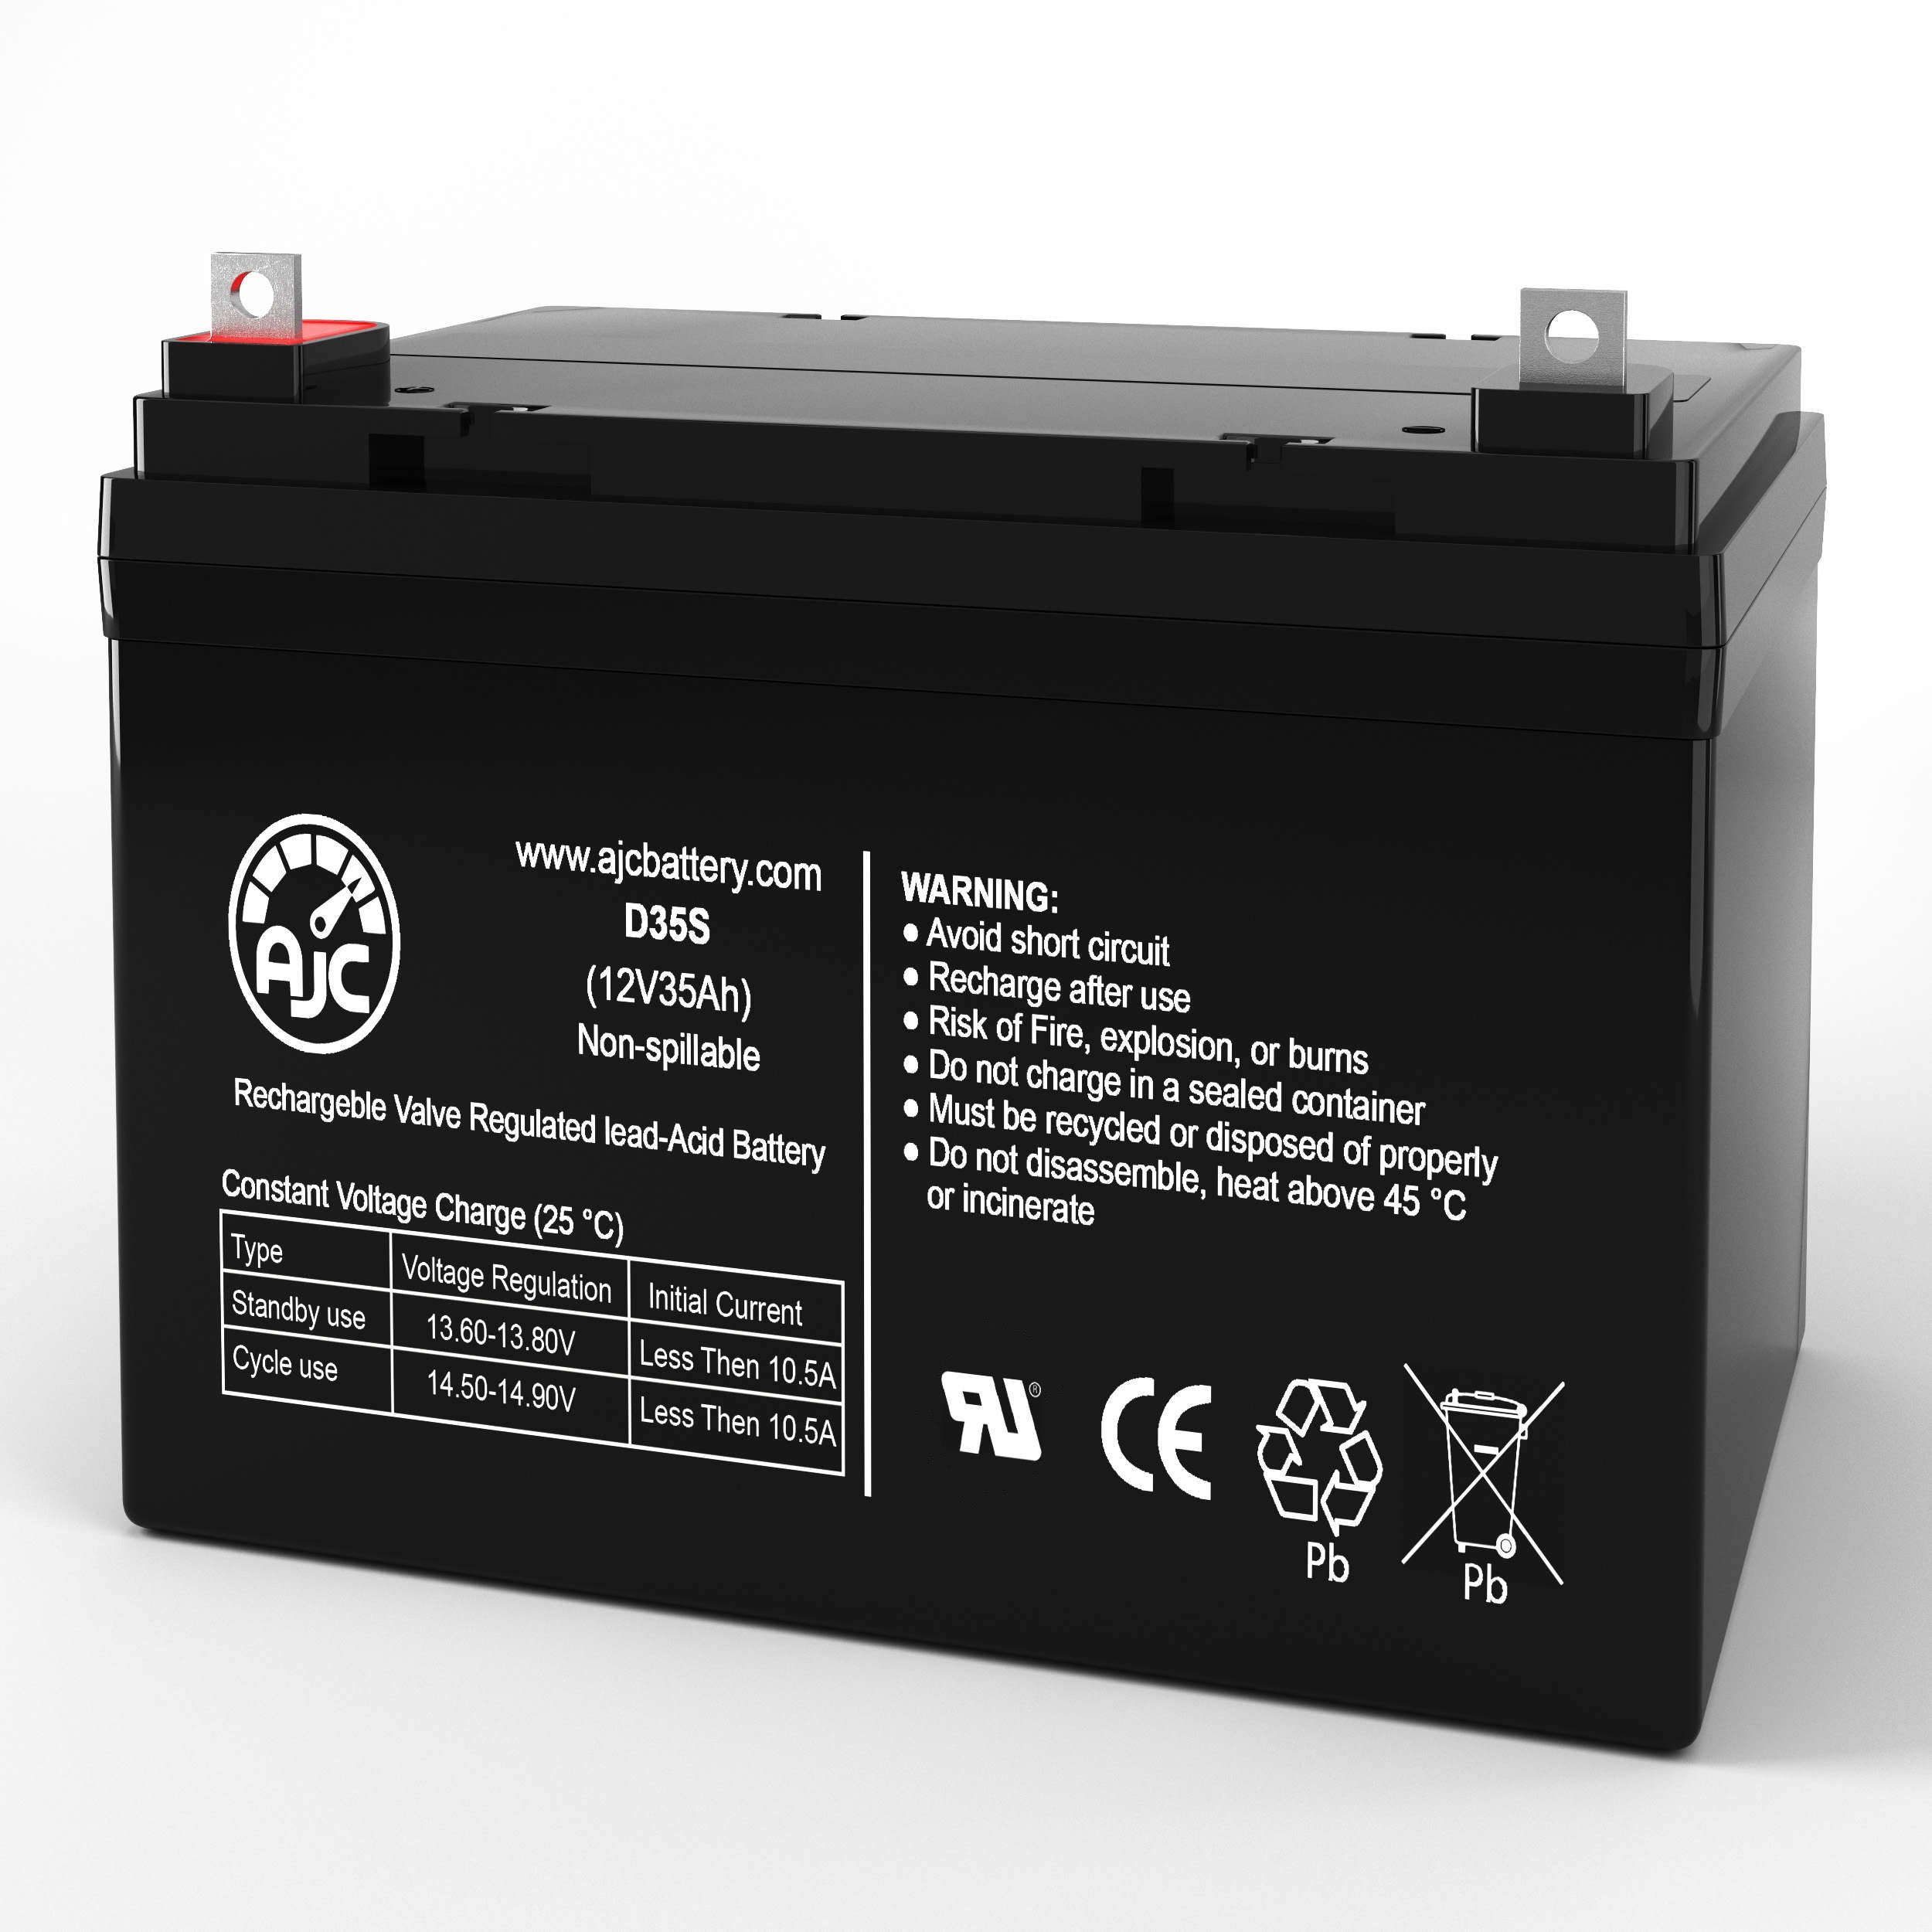 Black & Decker VEC026BD Electromate 400 Jump Starter Replacement Battery